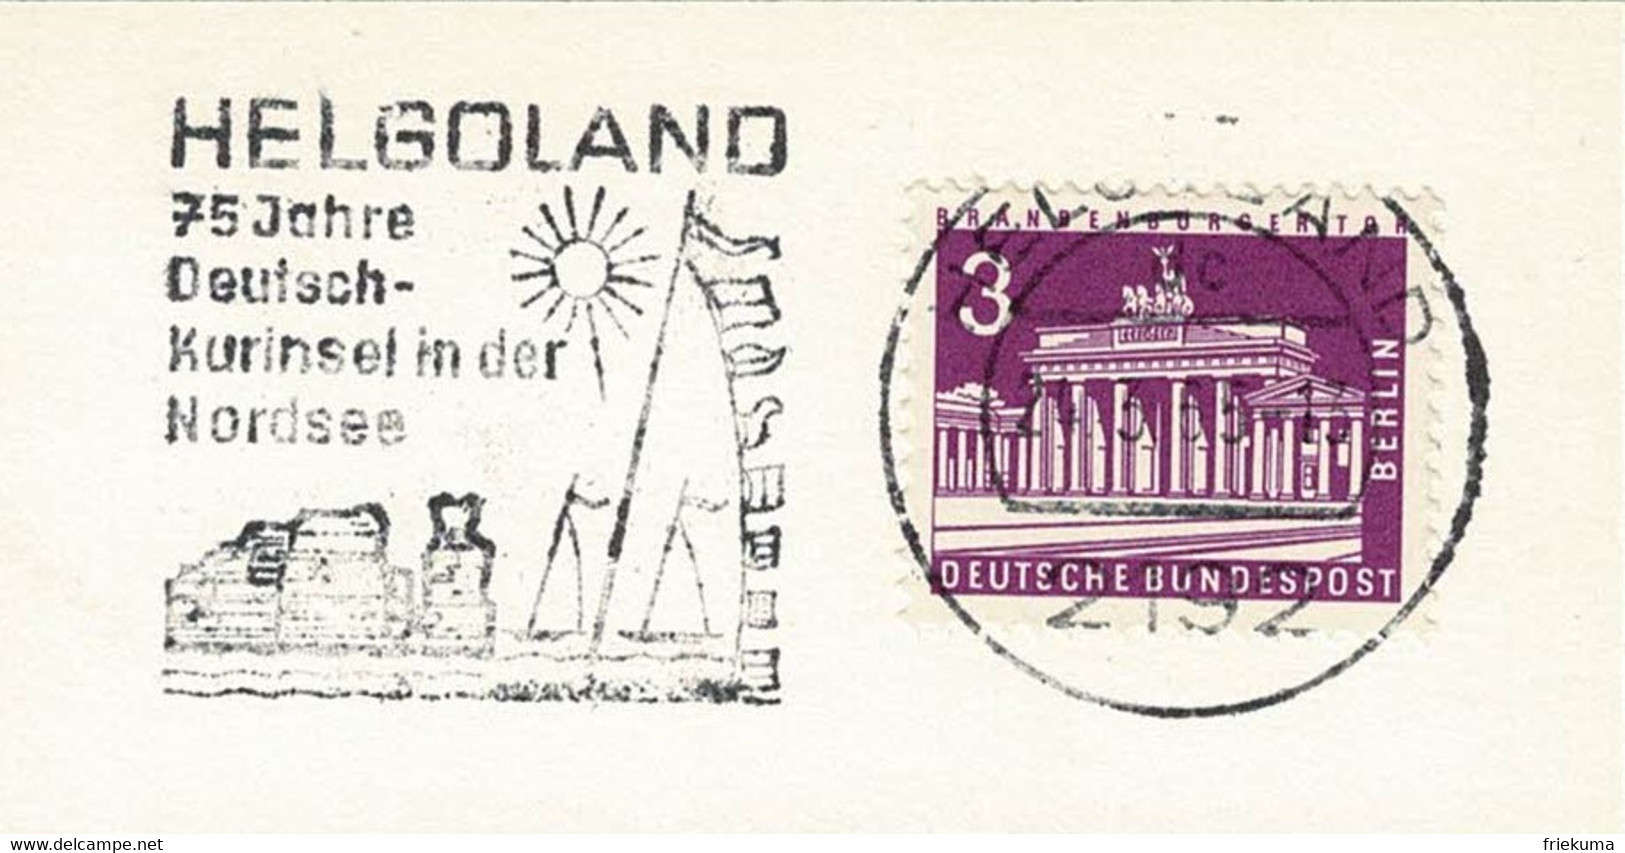 Deutsche Bundespost 1965, Flaggenstempel Helgoland, Kurinsel, Nordsee - Islands